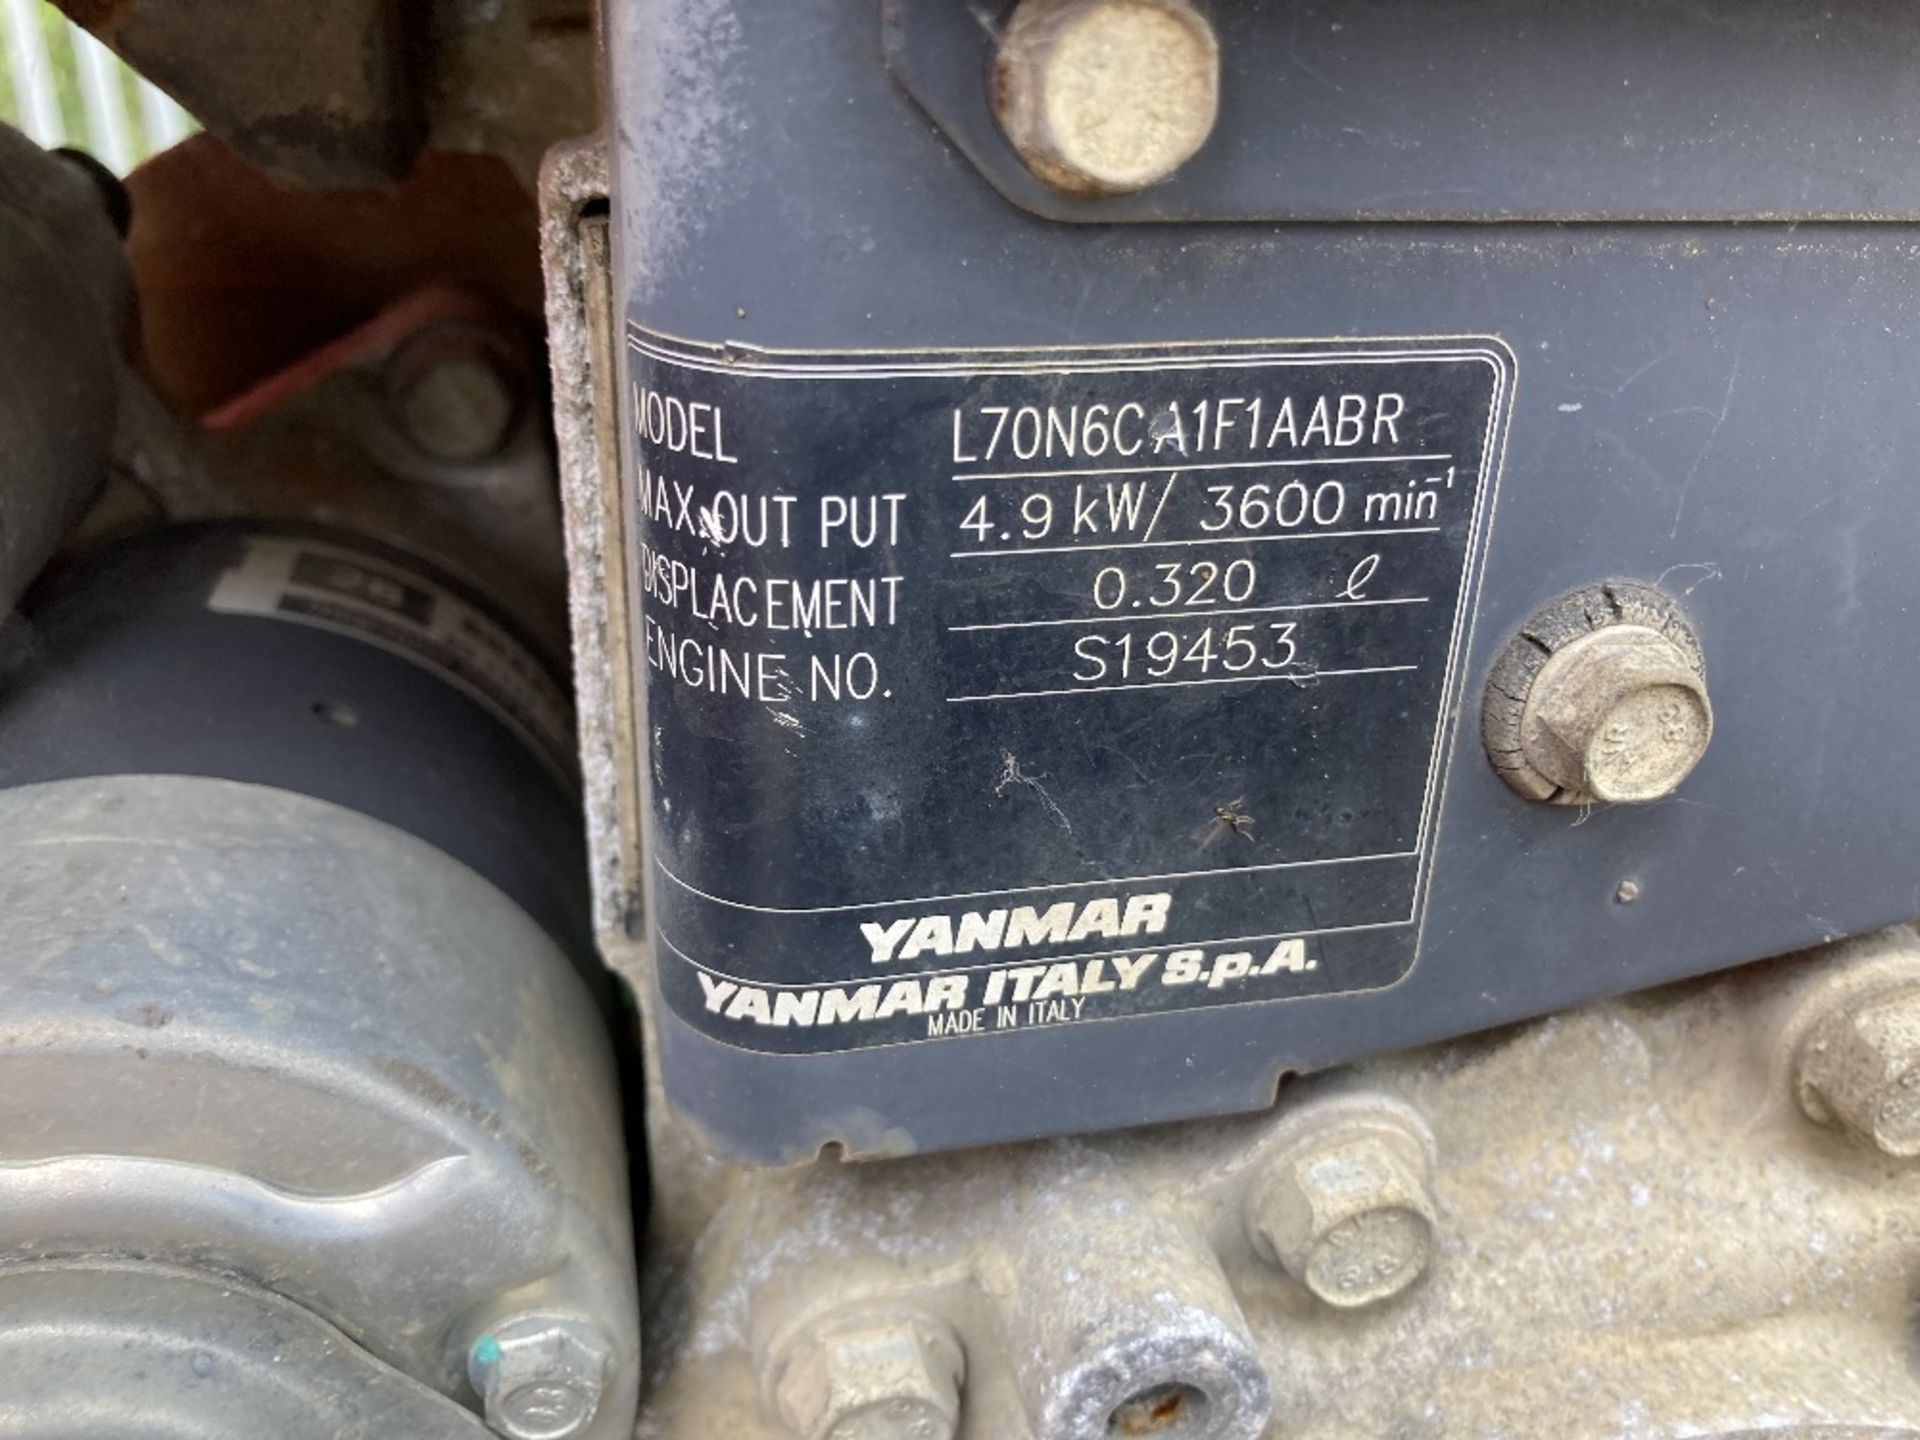 Taskman diesel powered towable pressure washer - Image 4 of 18